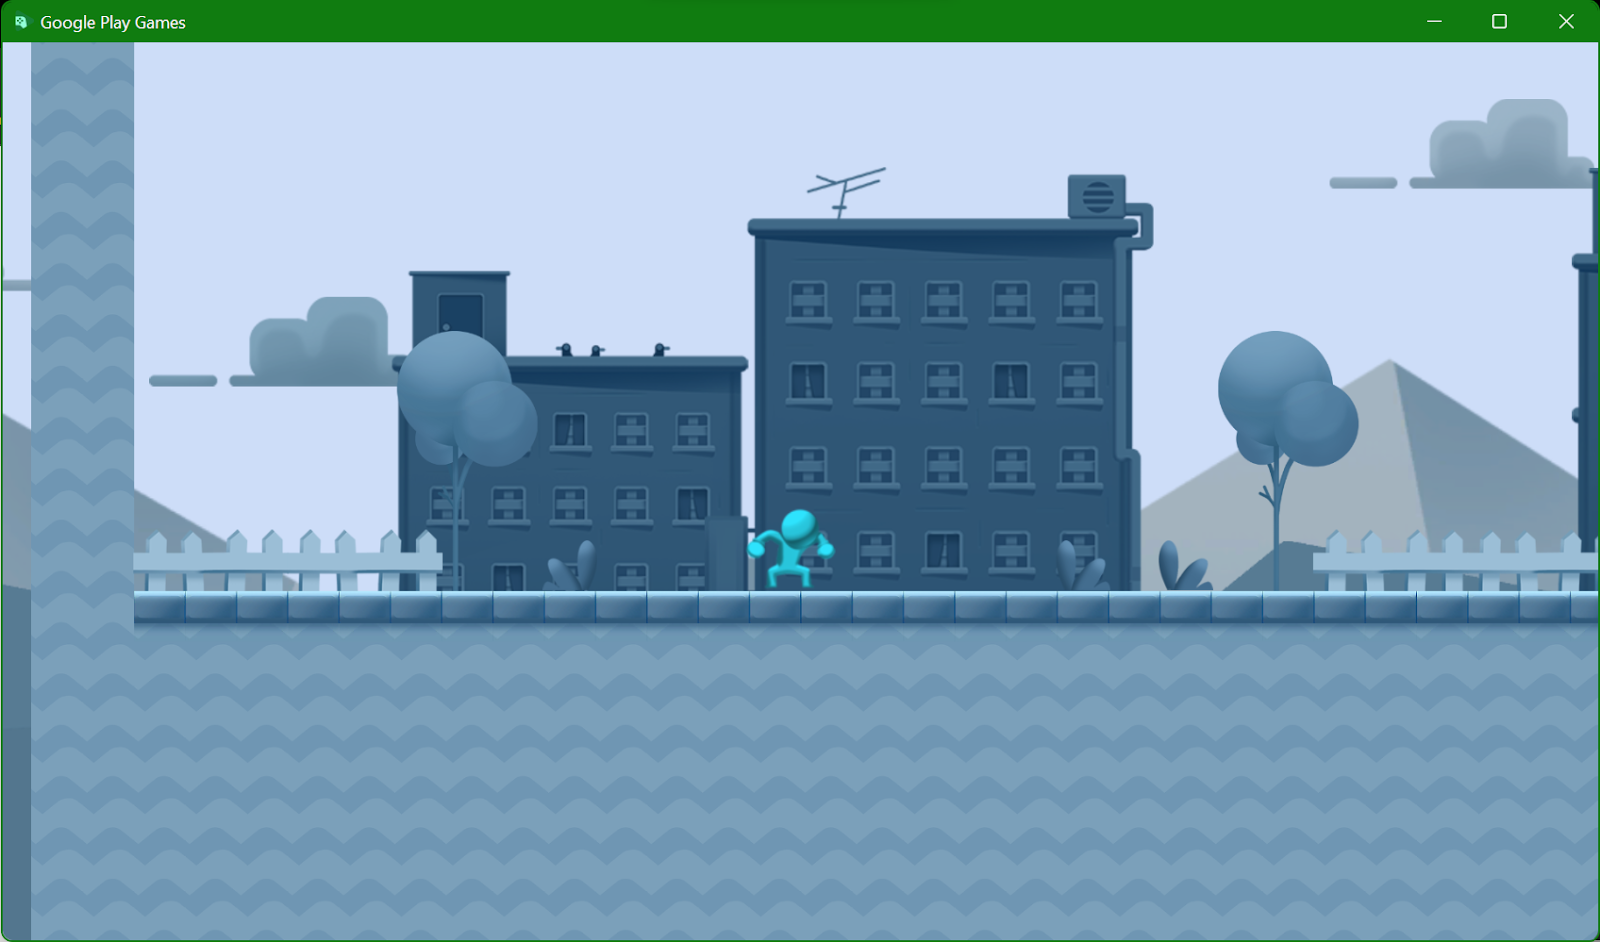 Captura de pantalla del emulador de Google Play Juegos con el "Microjuego en 2D plataformas" en ejecución